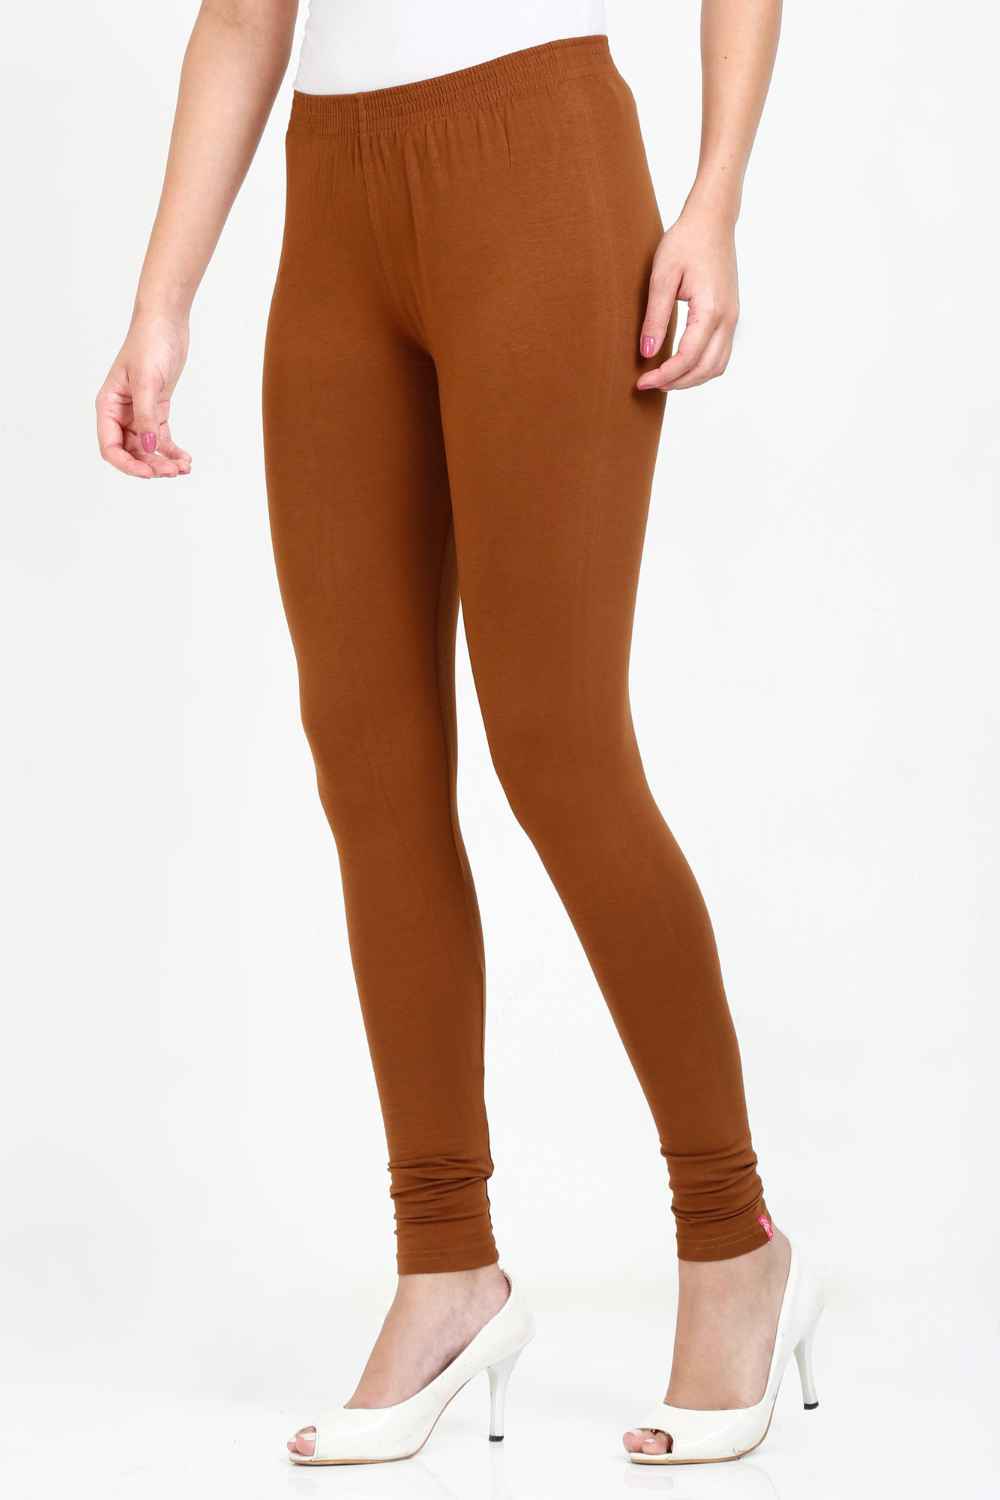 Women's Cotton Lycra Tawny Brown Full length legging | sandgrouse